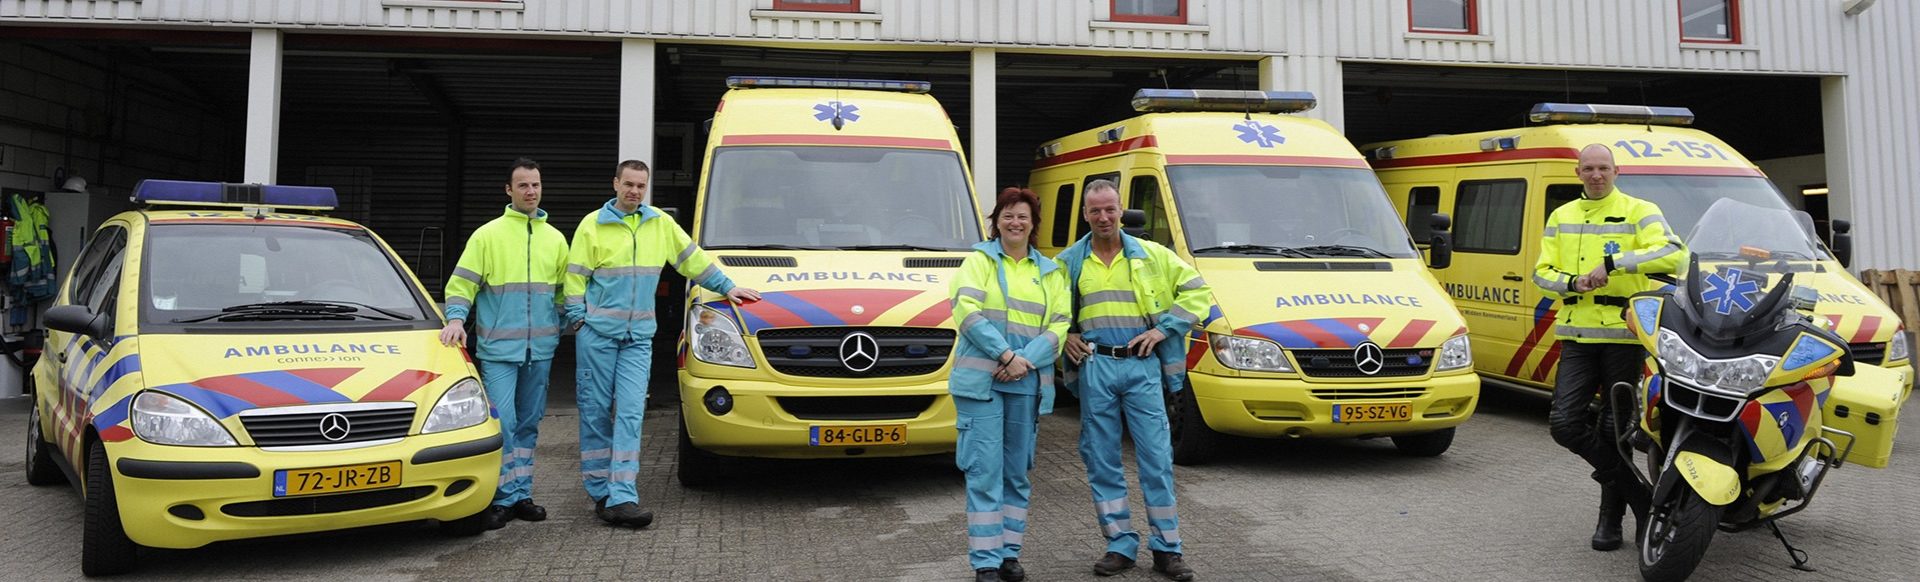 Equipe ambulanciers en uniforme jaune et bleu clair devant ambulances jaune et rouge de Kennemerland garage